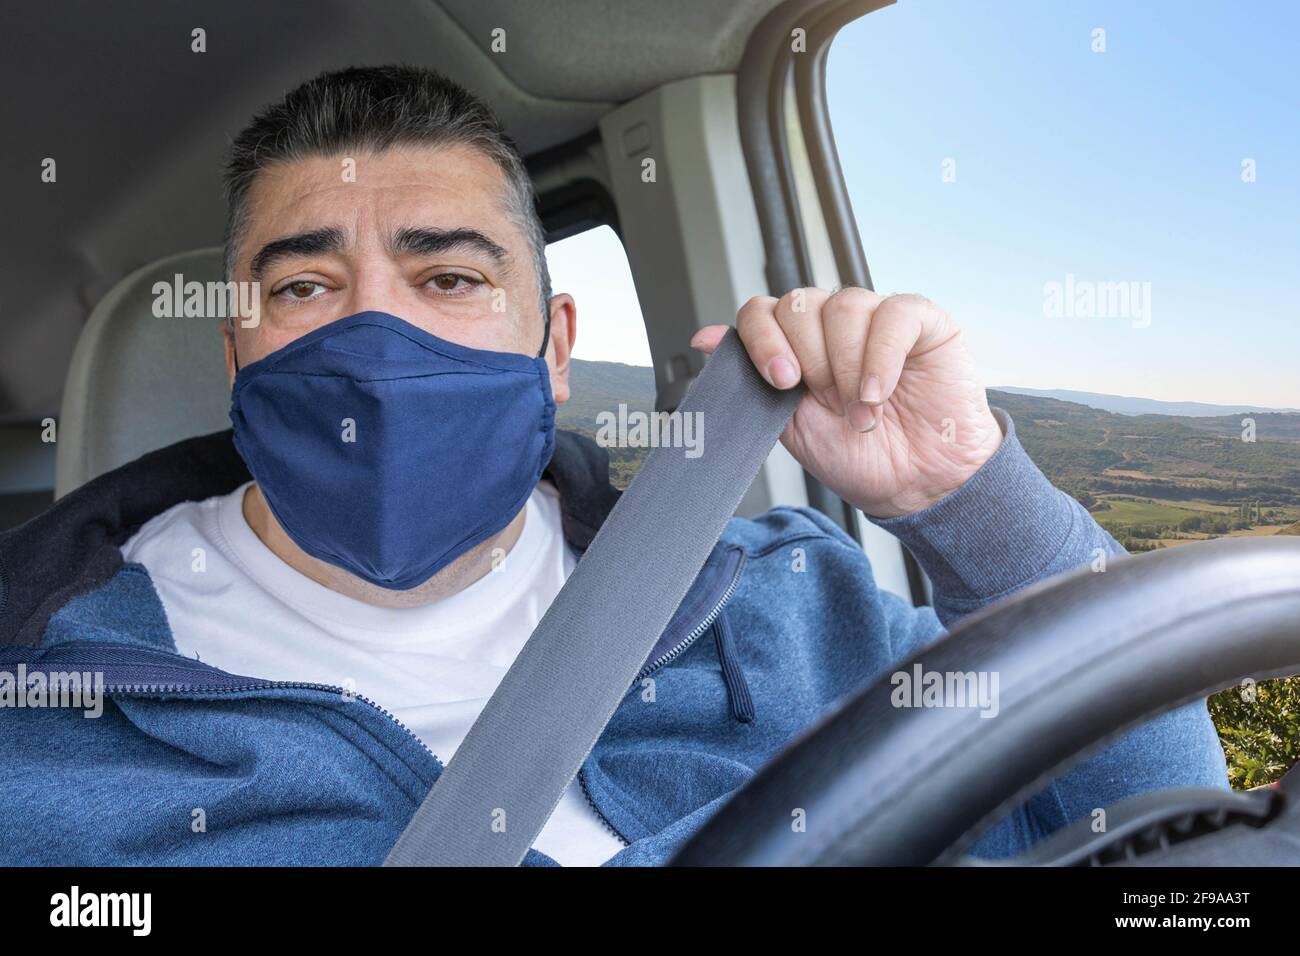 Mann mittleren Alters mit blauer Gesichtsmaske, der sein Auto aufsetzt Sicherheitsgurt vor der Fahrt zur Arbeit oder zu Hause Konzept mit selektivem Fokus Stockfoto